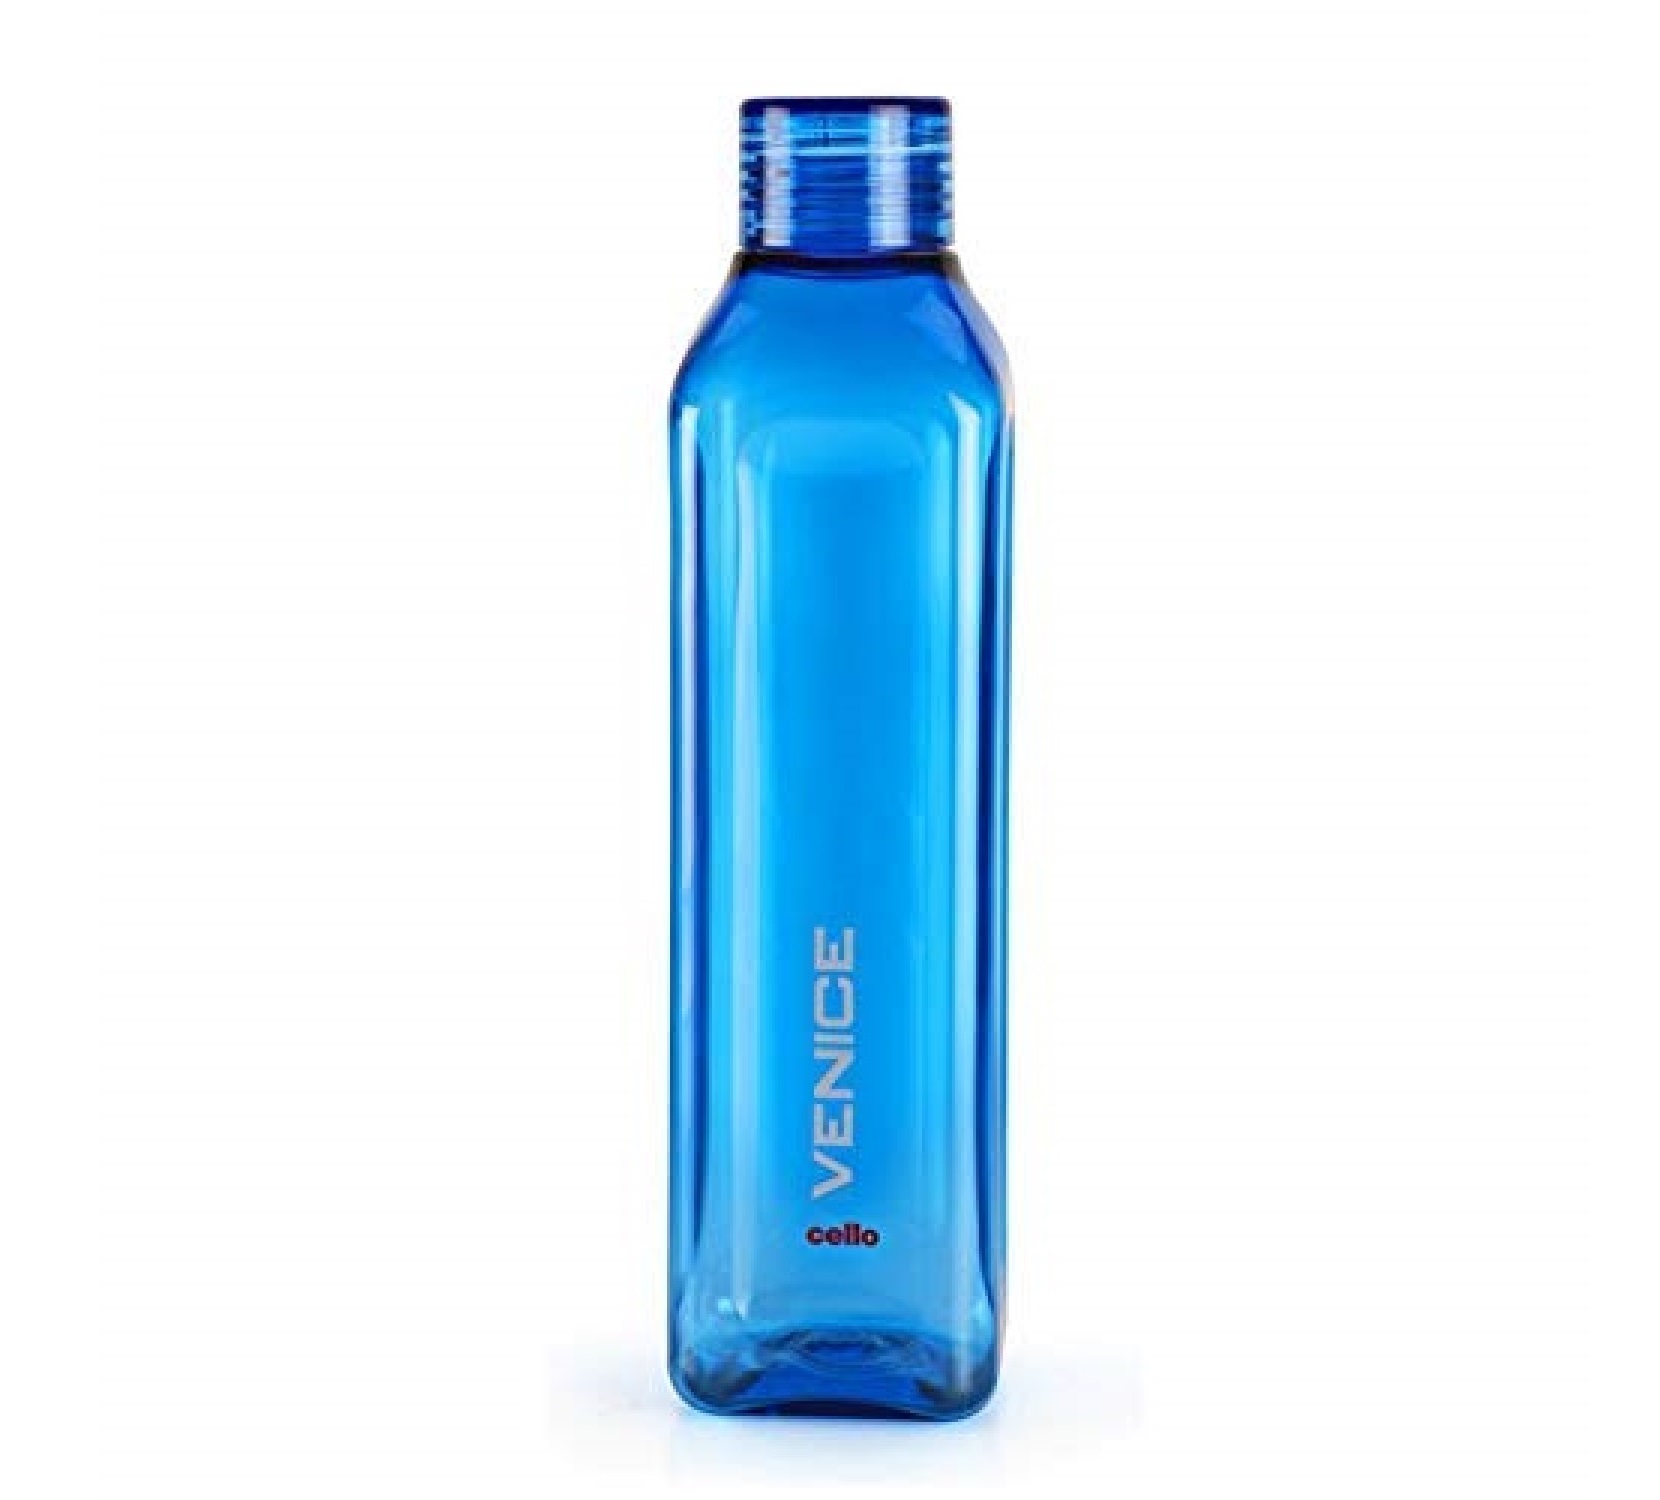 Cello Venice Plastic Water Bottle 1L Blue